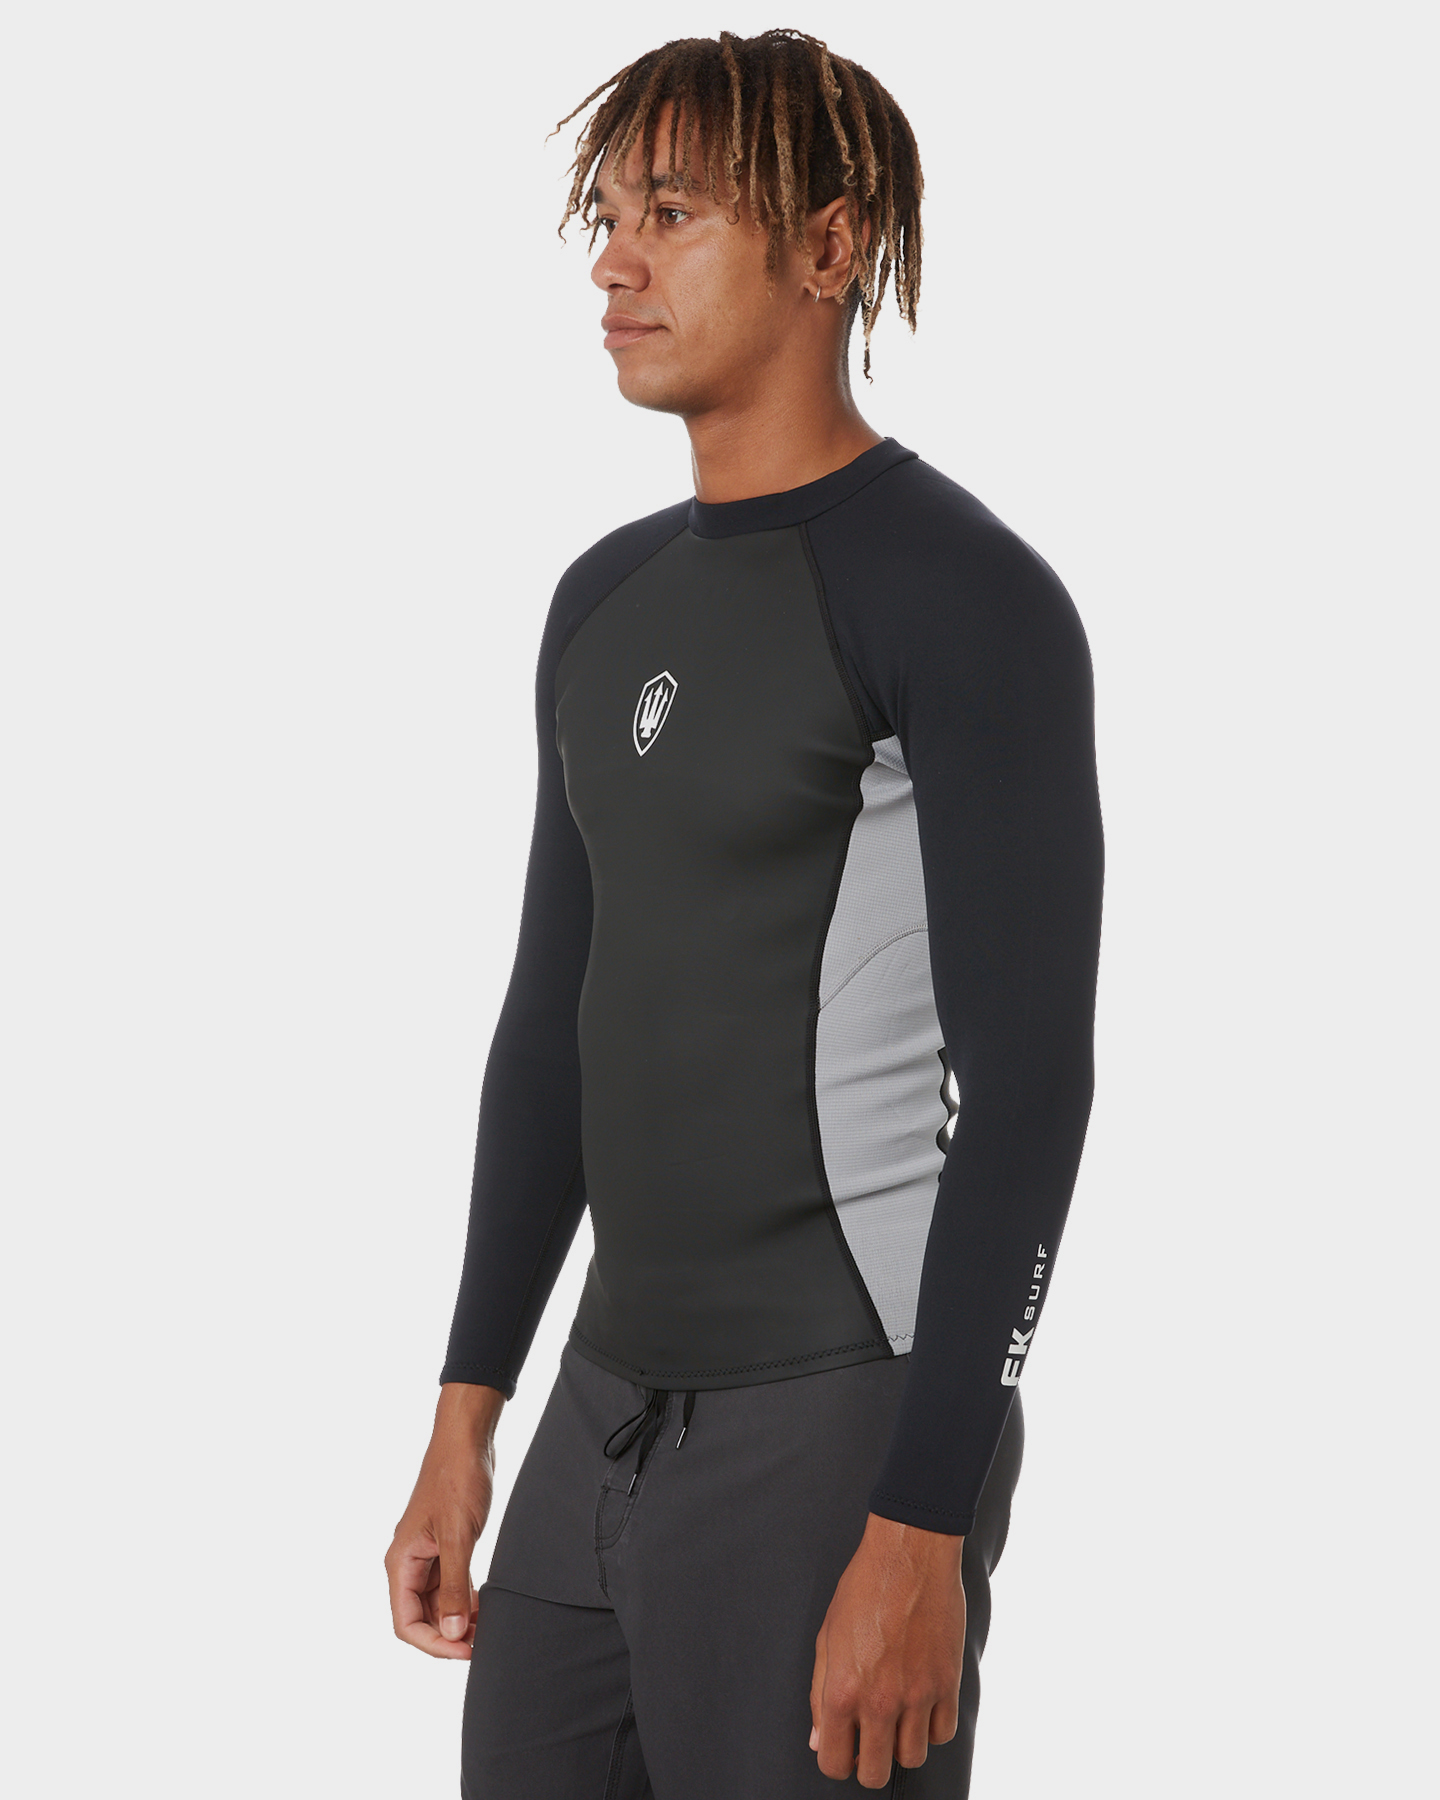 Fk Surf Zip Ls Jacket - Black Grey | SurfStitch